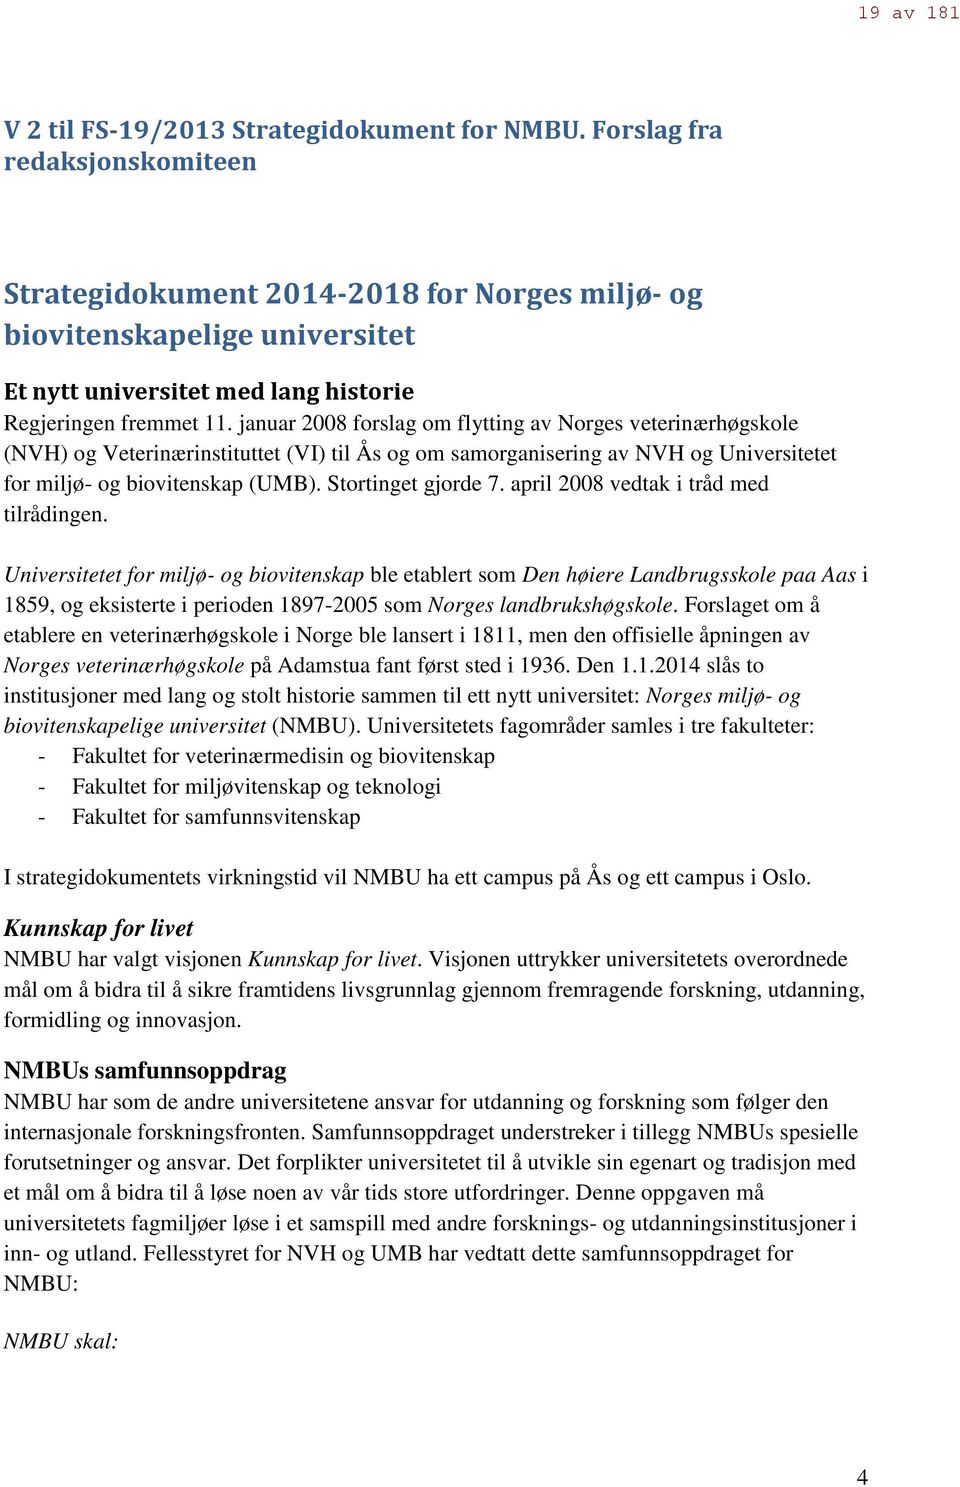 januar 2008 forslag om flytting av Norges veterinærhøgskole (NVH) og Veterinærinstituttet (VI) til Ås og om samorganisering av NVH og Universitetet for miljø- og biovitenskap (UMB).